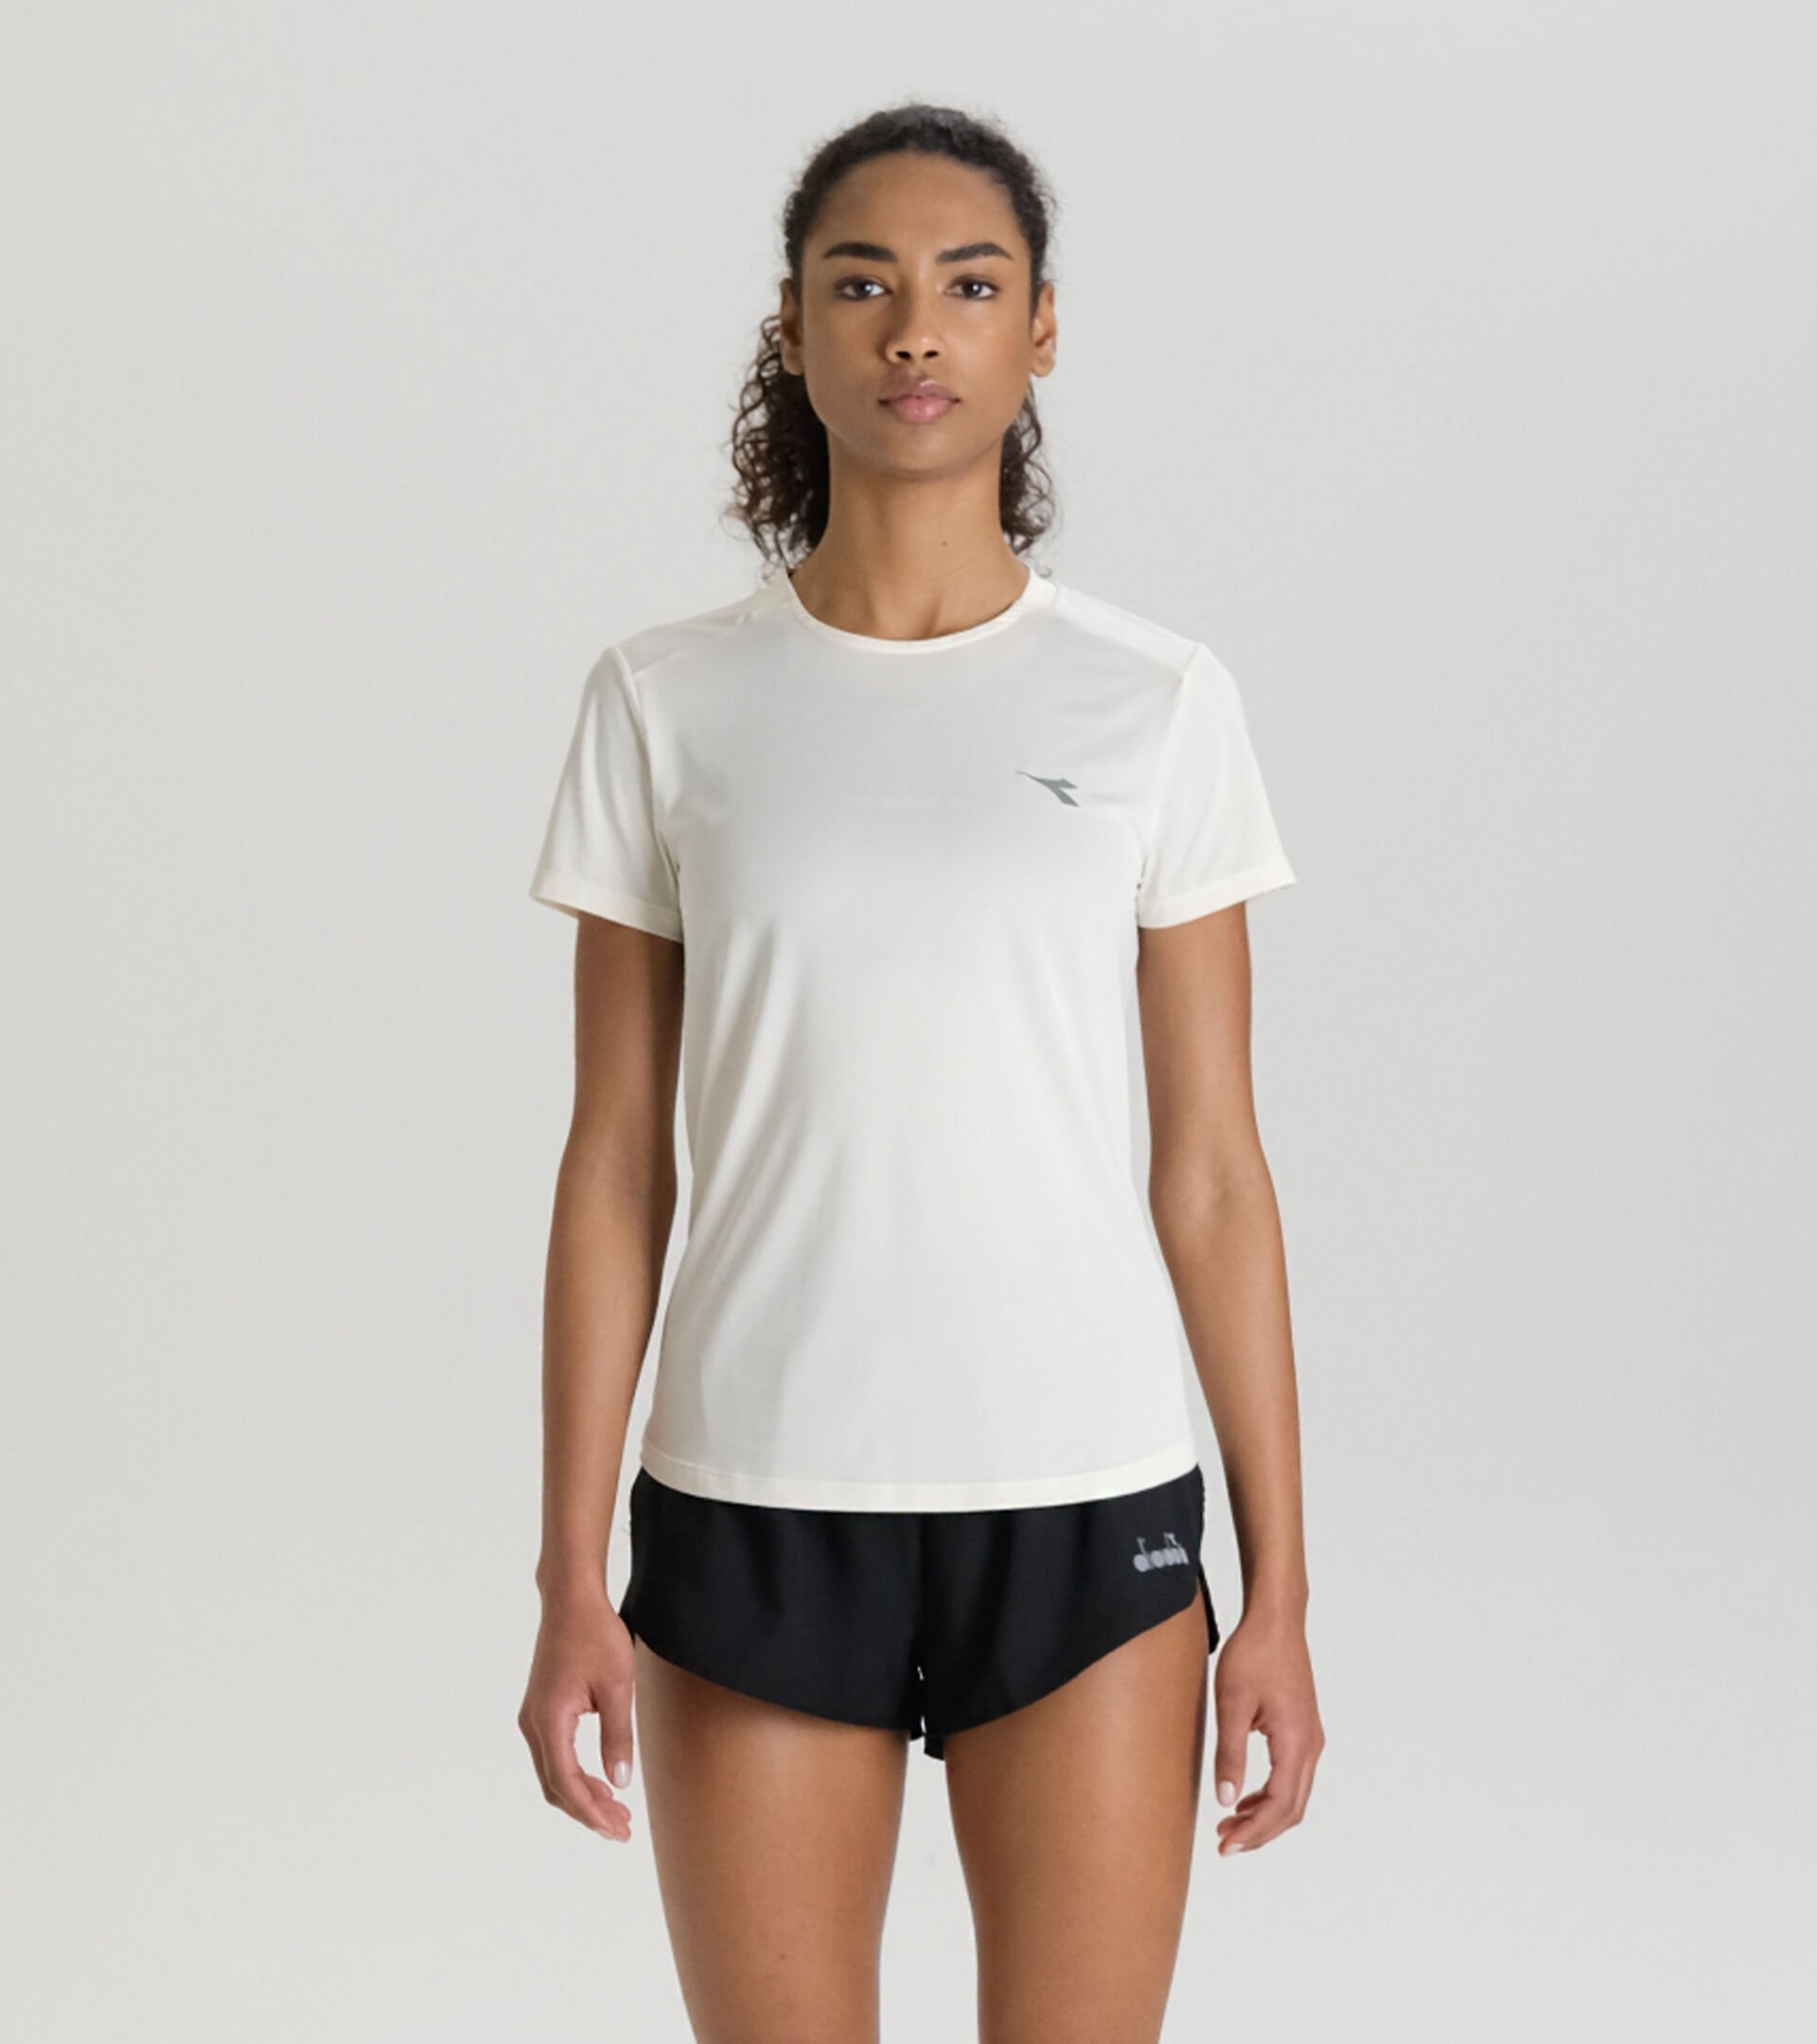 Running t-shirt - Light fabric - Women’s
 L. SUPER LIGHT SS T-SHIRT WHISPER WHITE - Diadora